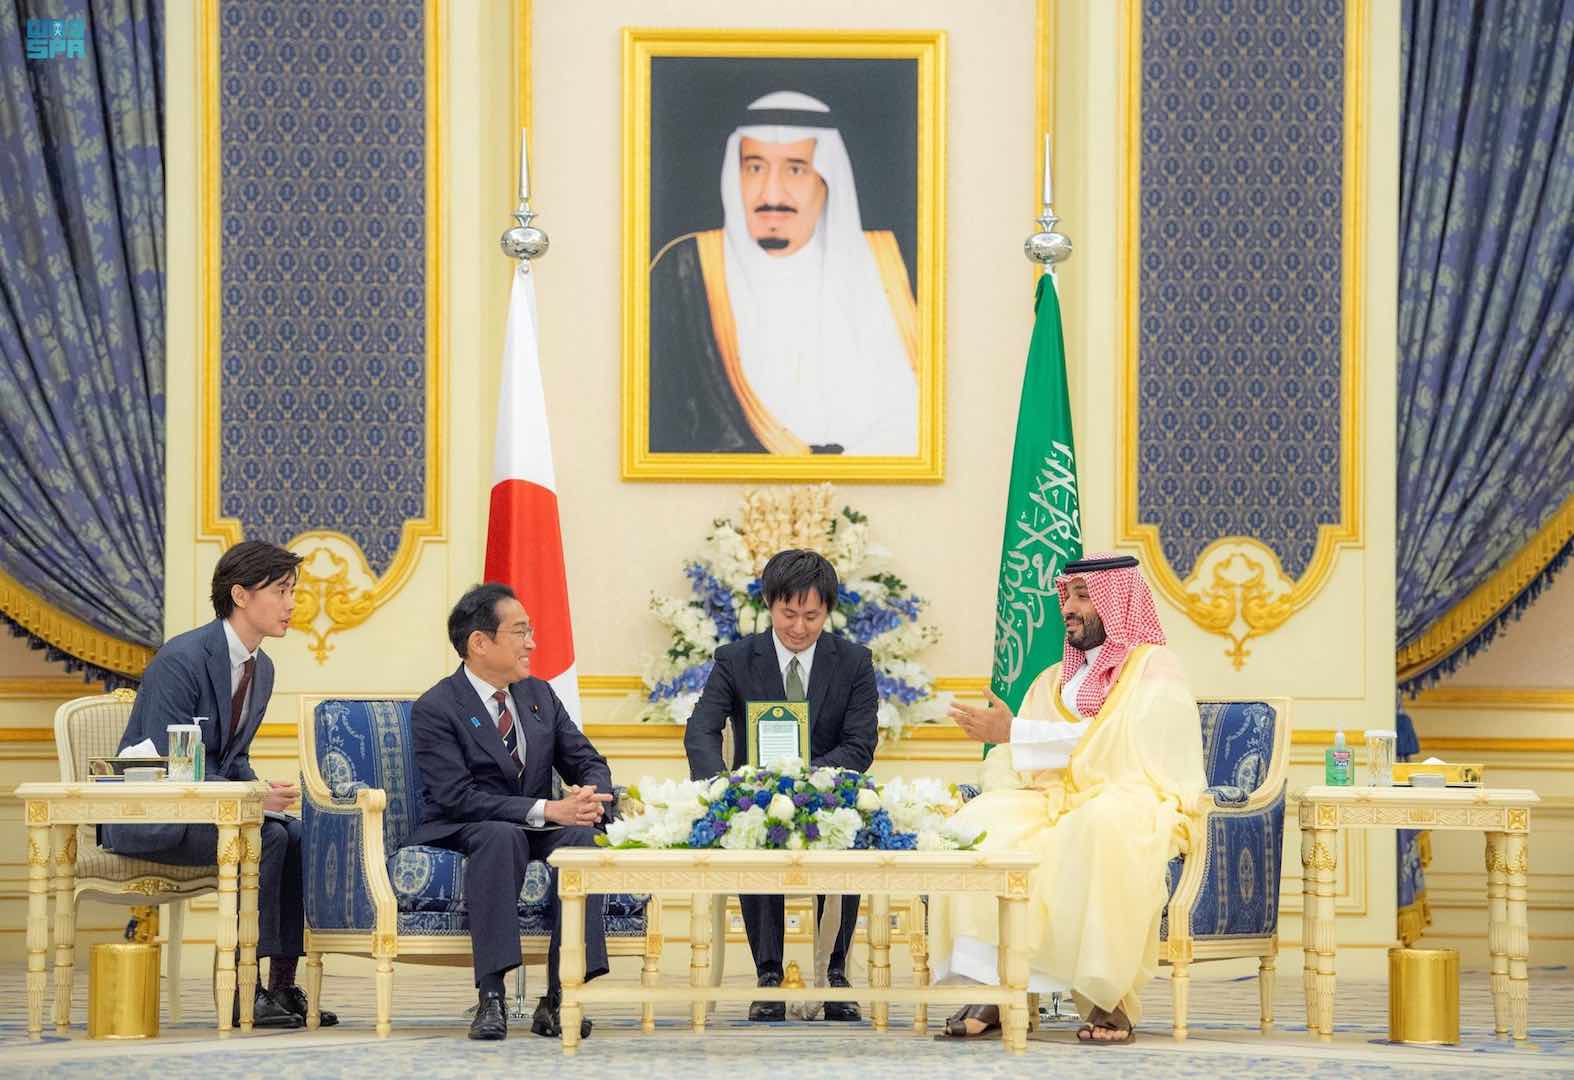 السعودية واليابان تبدءان مشروعاً مشتركاً لتعزيز التعاون في قطاع الطاقة النظيفة